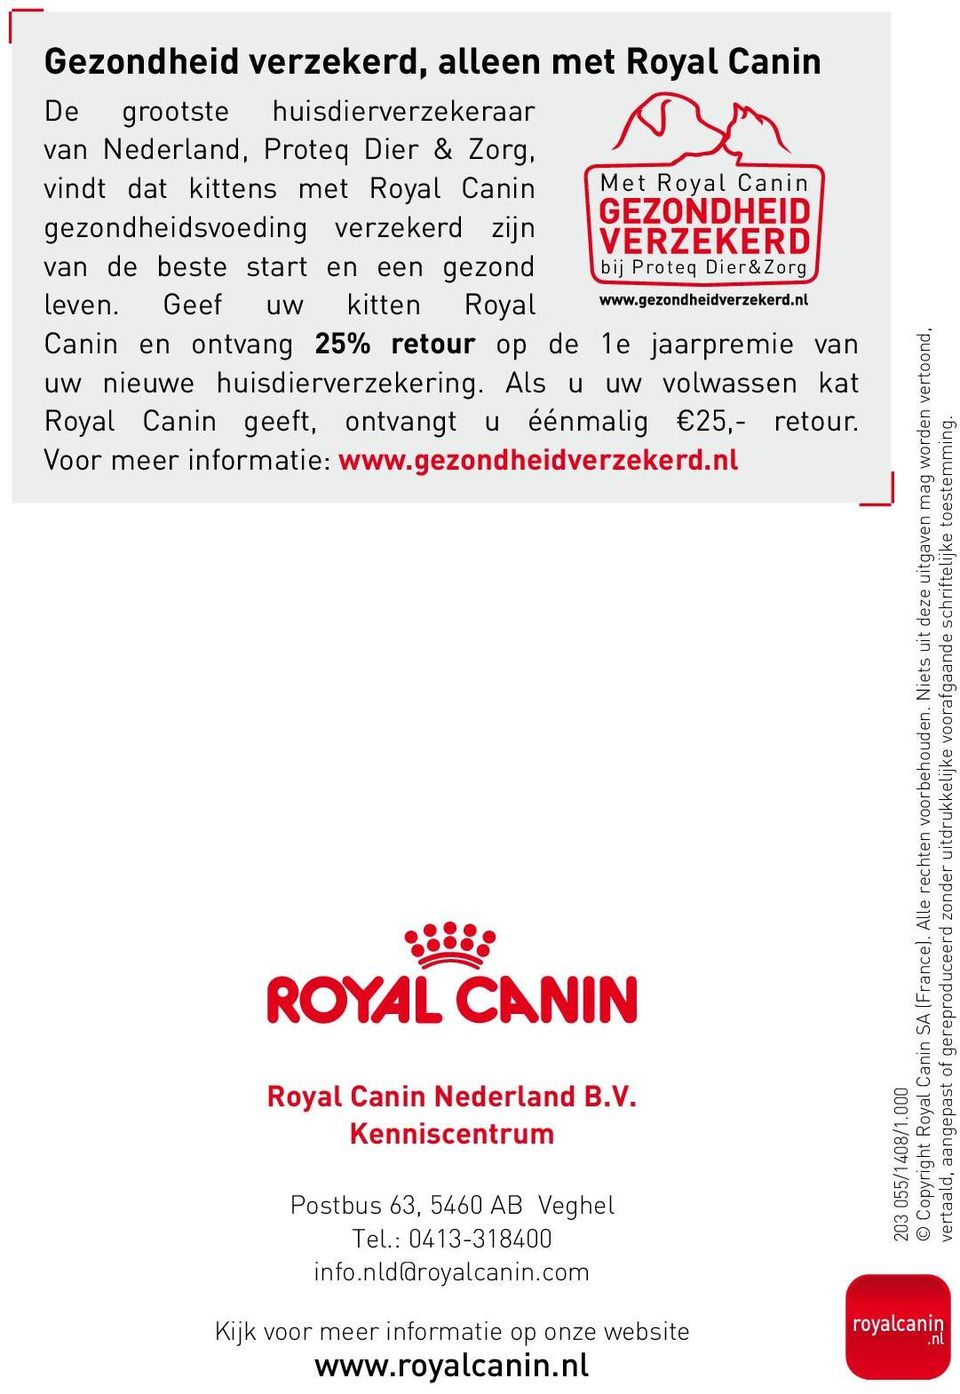 Als u uw volwassen kat Royal Canin geeft, ontvangt u éénmalig 25,- retour. Voor meer informatie: www.gezondheidverzekerd.nl Royal Canin Nederland B.V. Kenniscentrum Postbus 63, 5460 AB Veghel Tel.